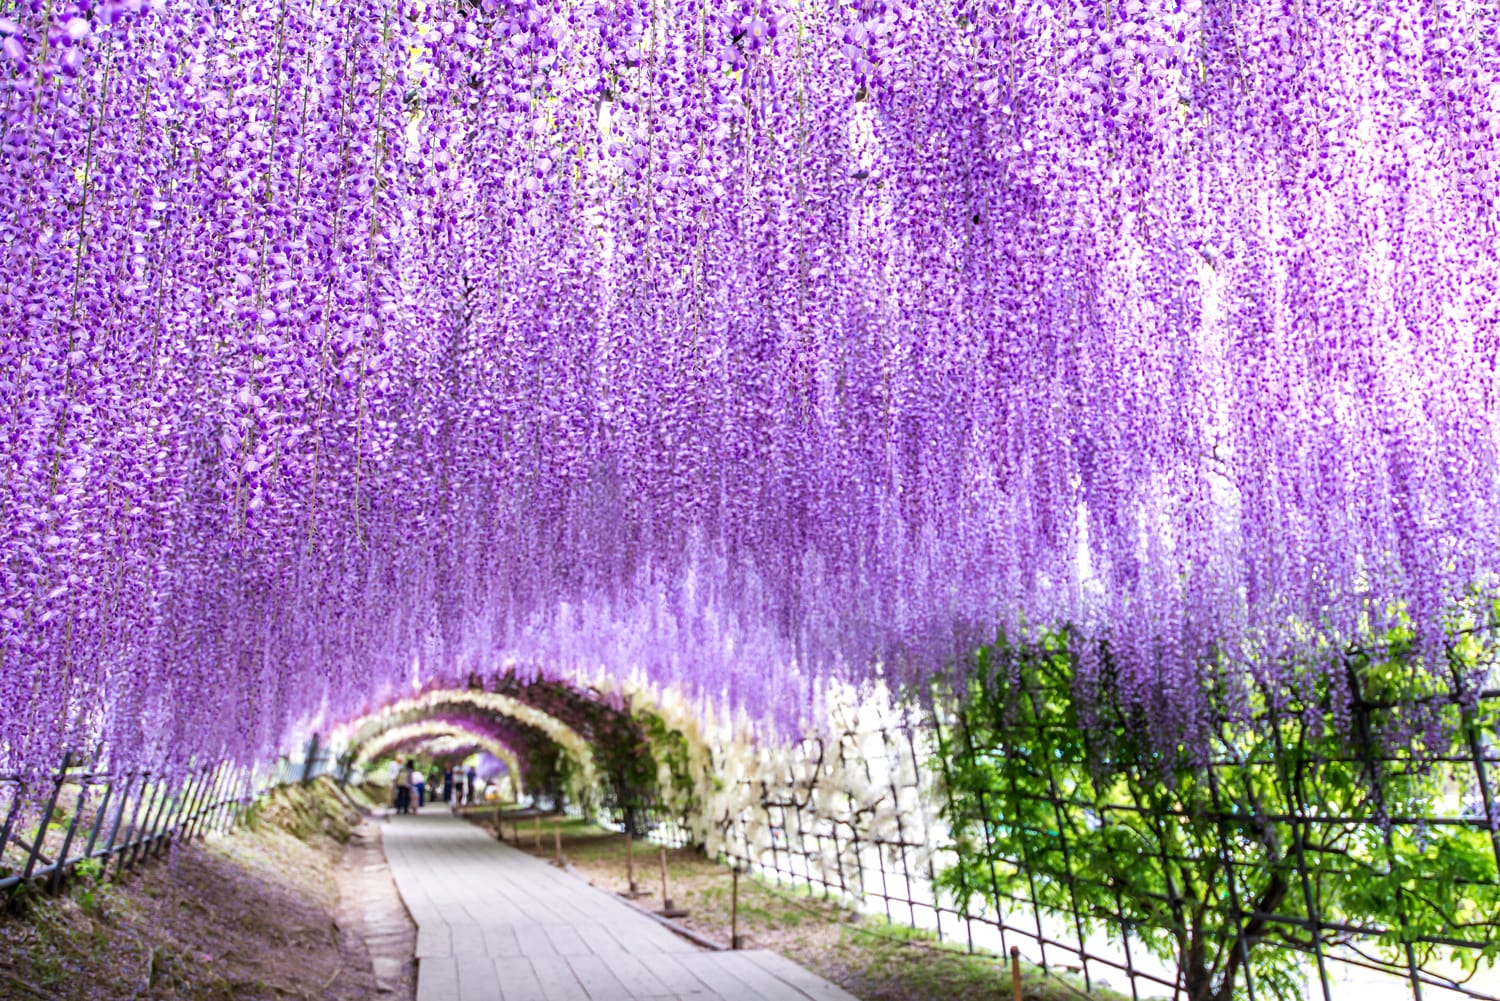 Wisteria Tunnel at Kawachi Fuji Garden, Japan